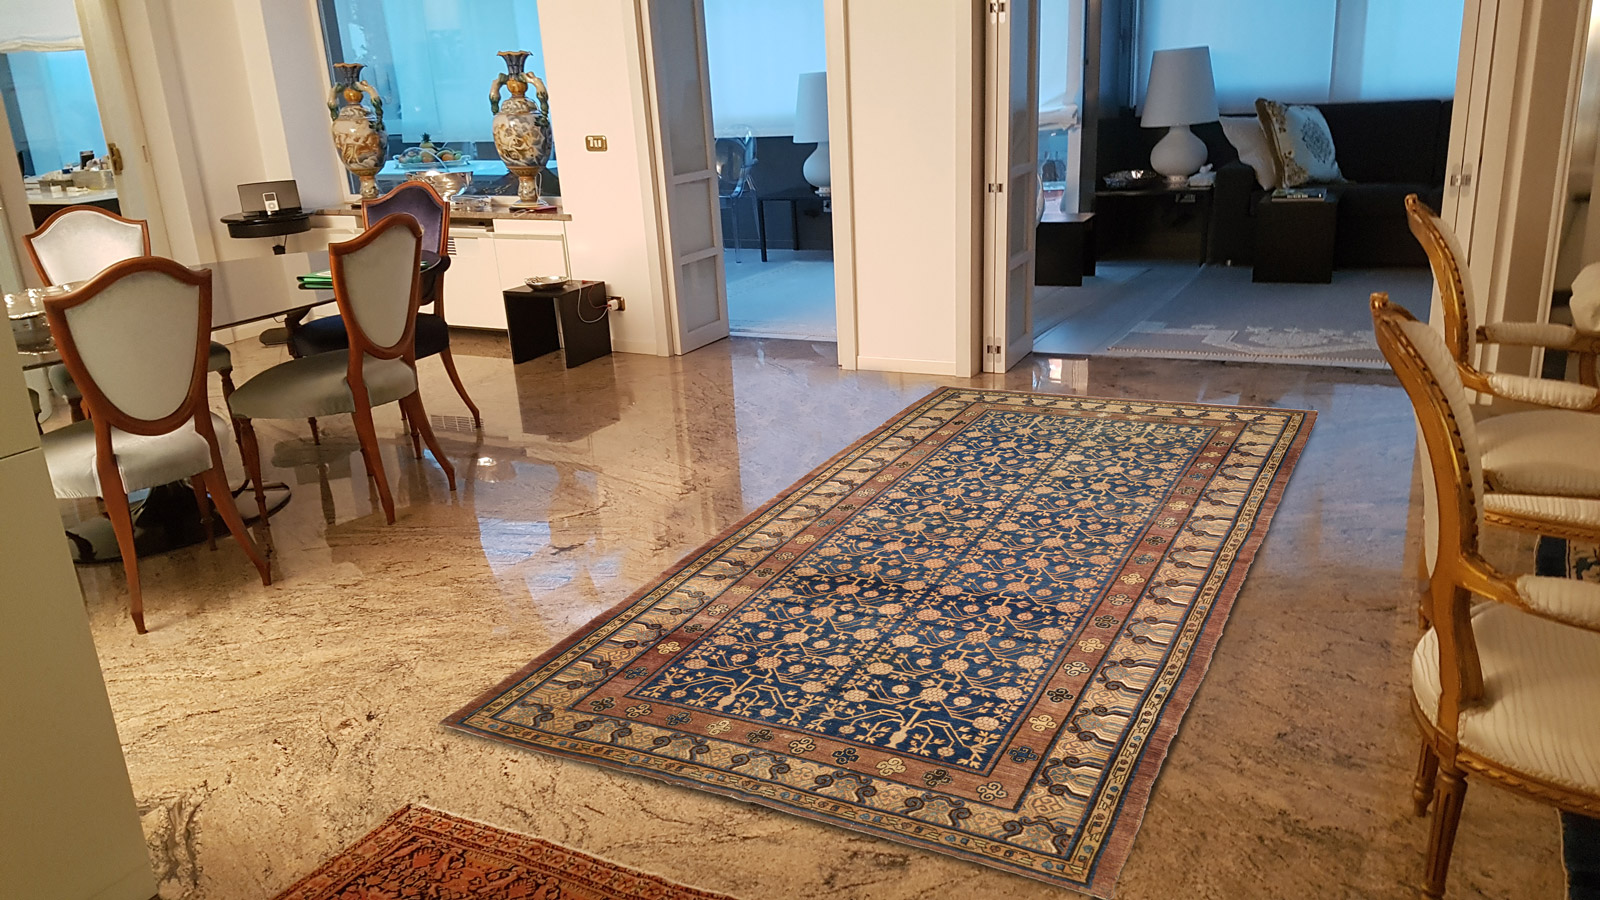 tappeti antichi da collezione ambientati